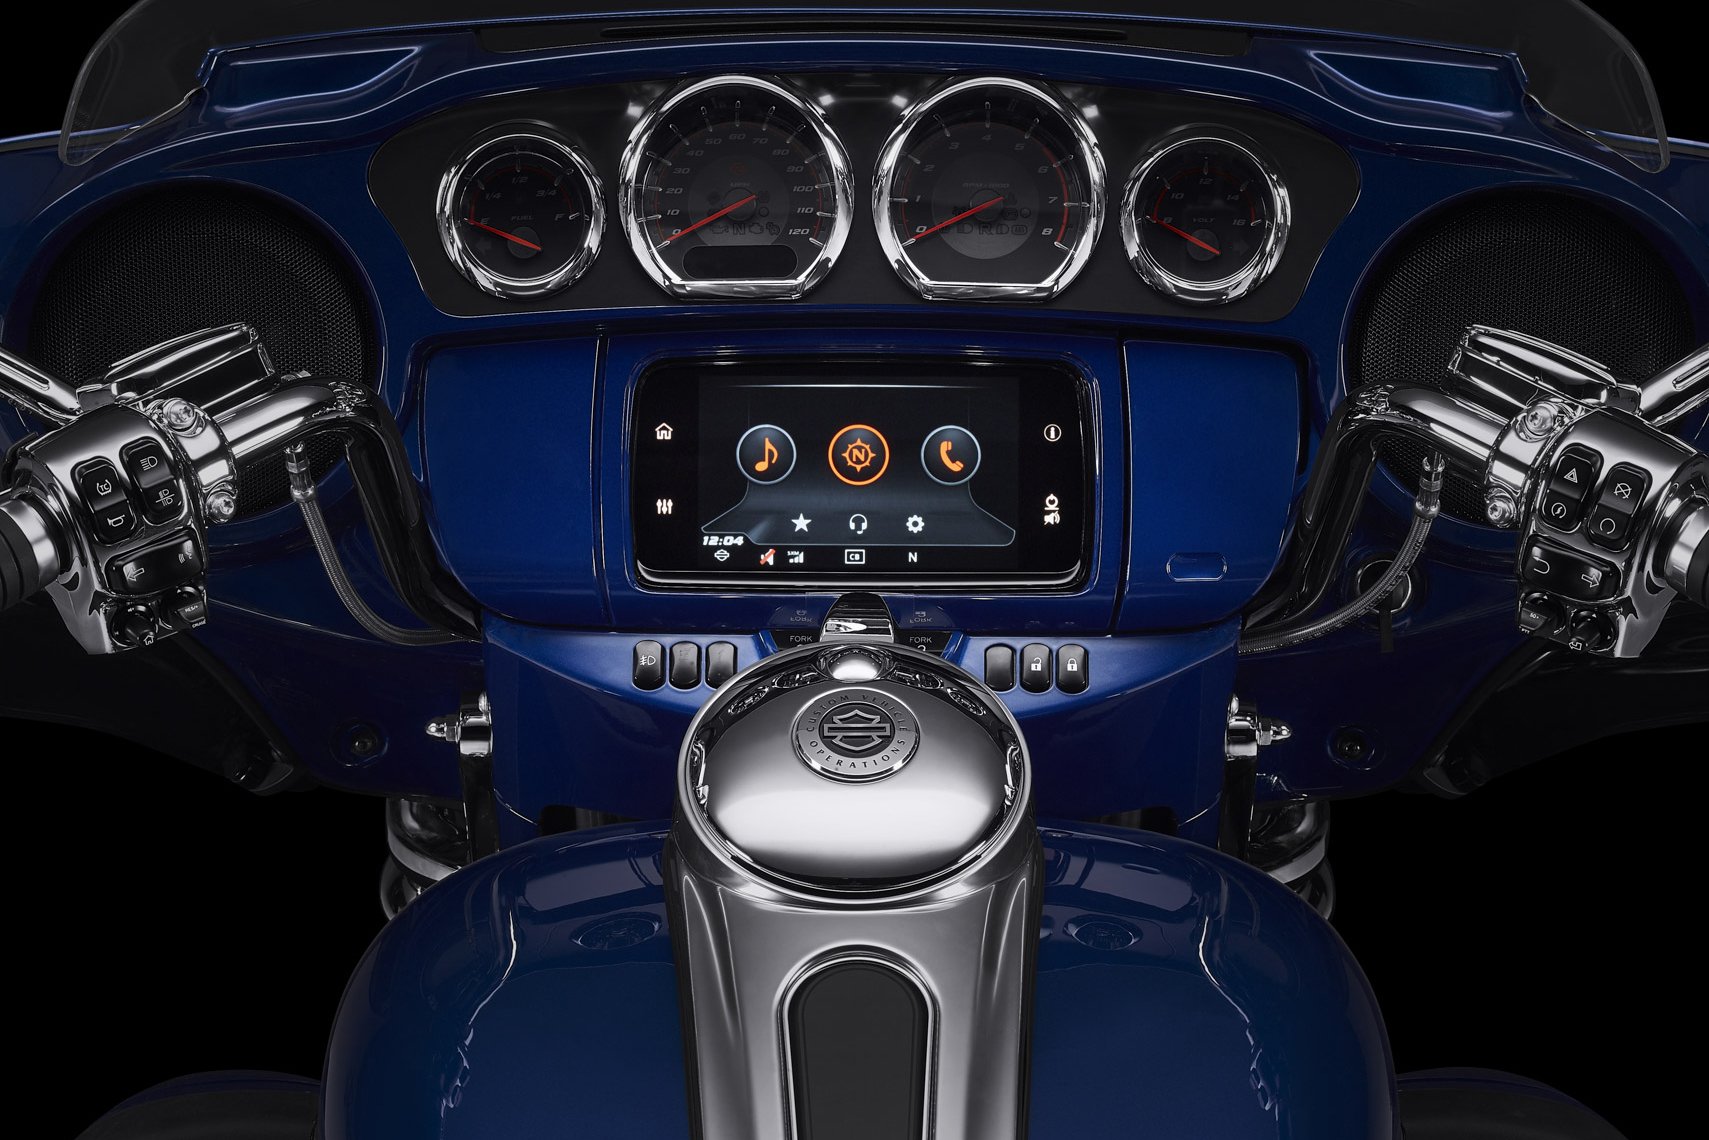 Harley Davidson motosikletlere Android Auto desteği geliyor